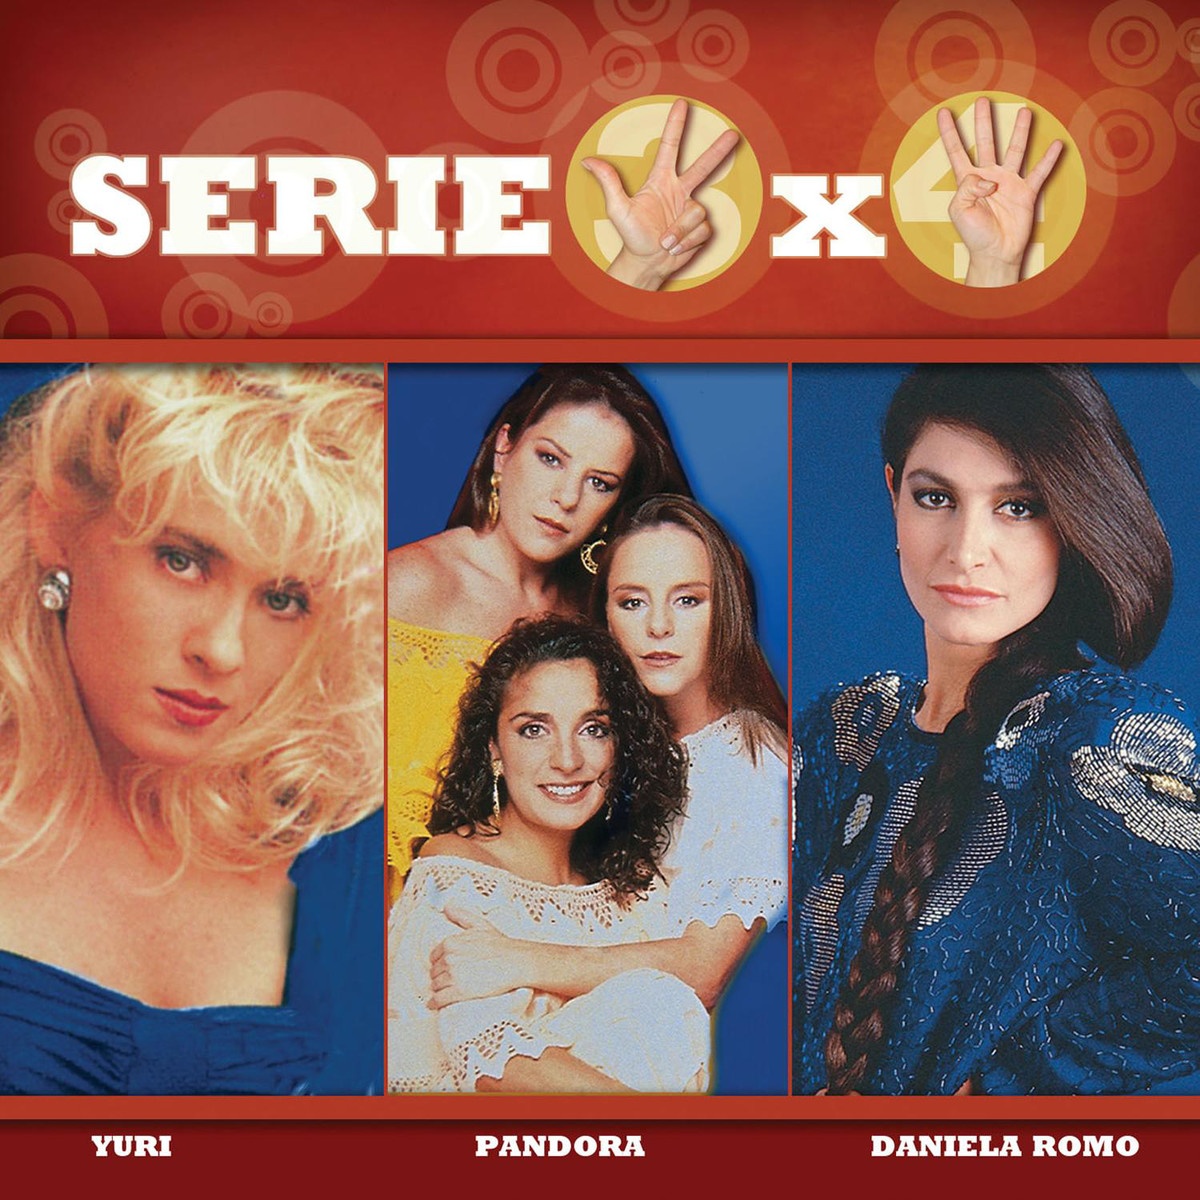 Serie 3x4 (Yuri, Pandora, Daniela Romo)